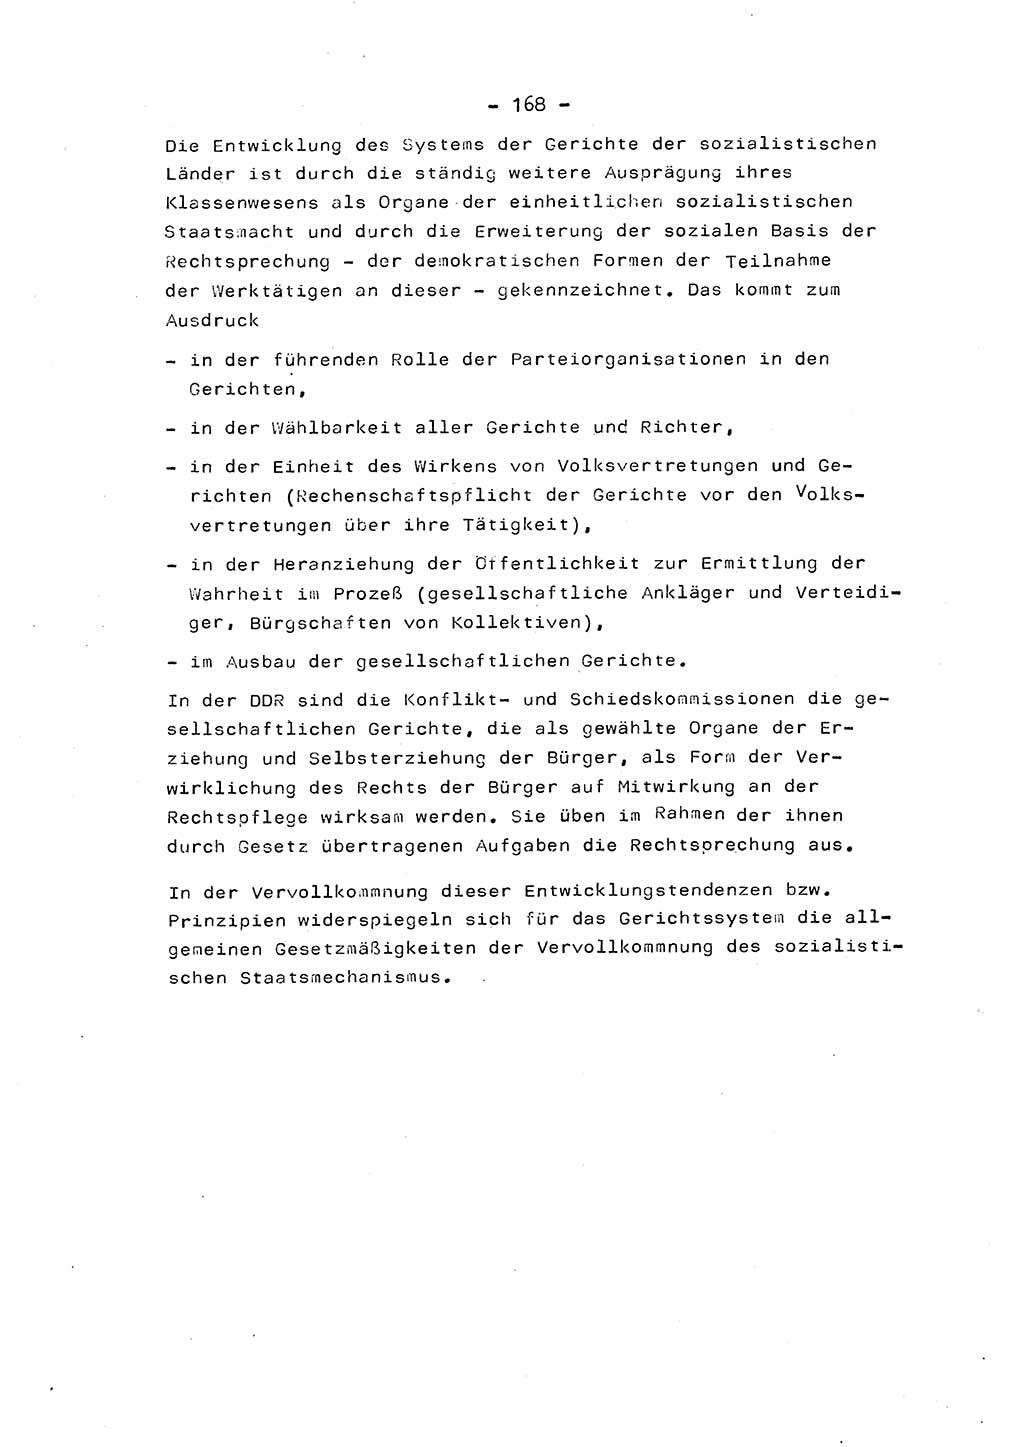 Marxistisch-leninistische Staats- und Rechtstheorie [Deutsche Demokratische Republik (DDR)] 1975, Seite 168 (ML St.-R.-Th. DDR 1975, S. 168)